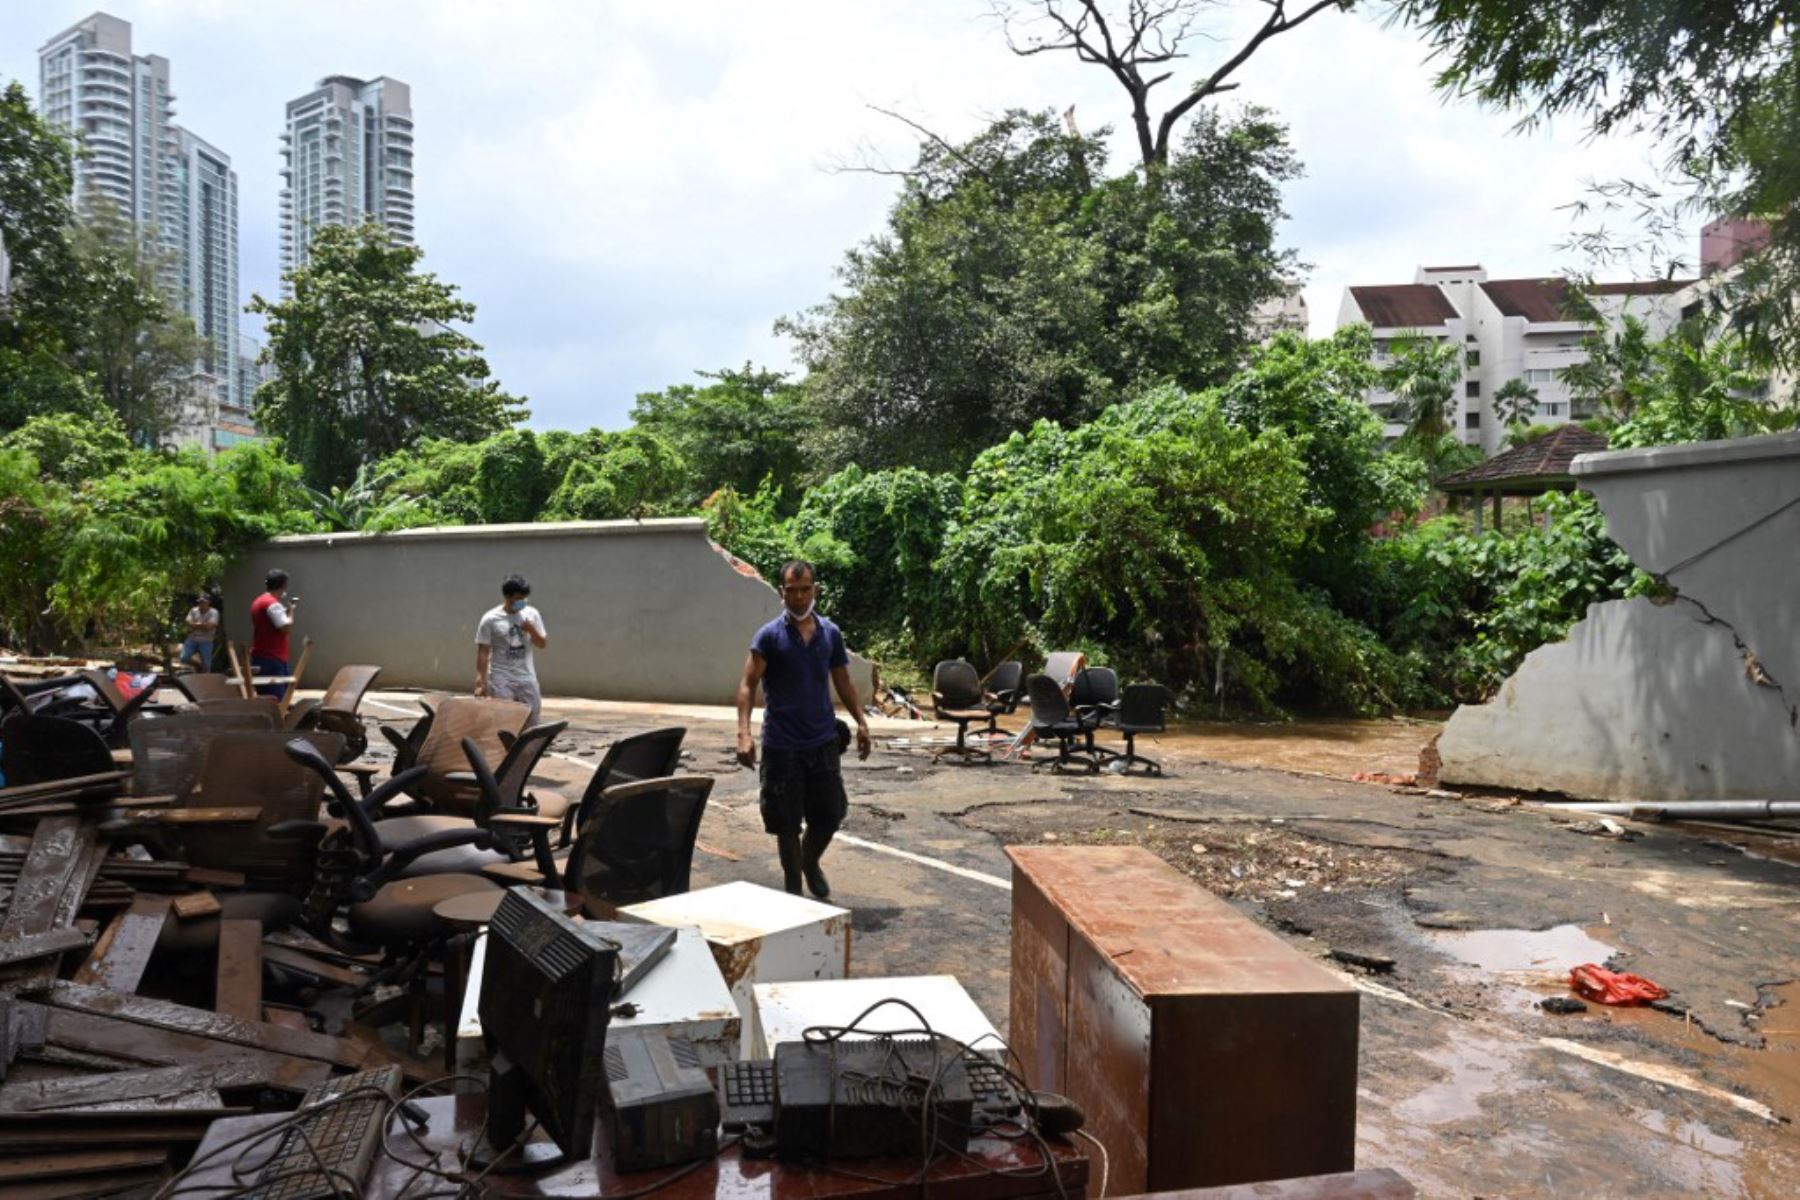 Damnificados pusieron a secar los muebles embarrados de un restaurante en Kemang, Yakarta después que varias zonas de la capital de Indonesia se inundaron por las fuertes lluvias estacionales.

Foto: AFP